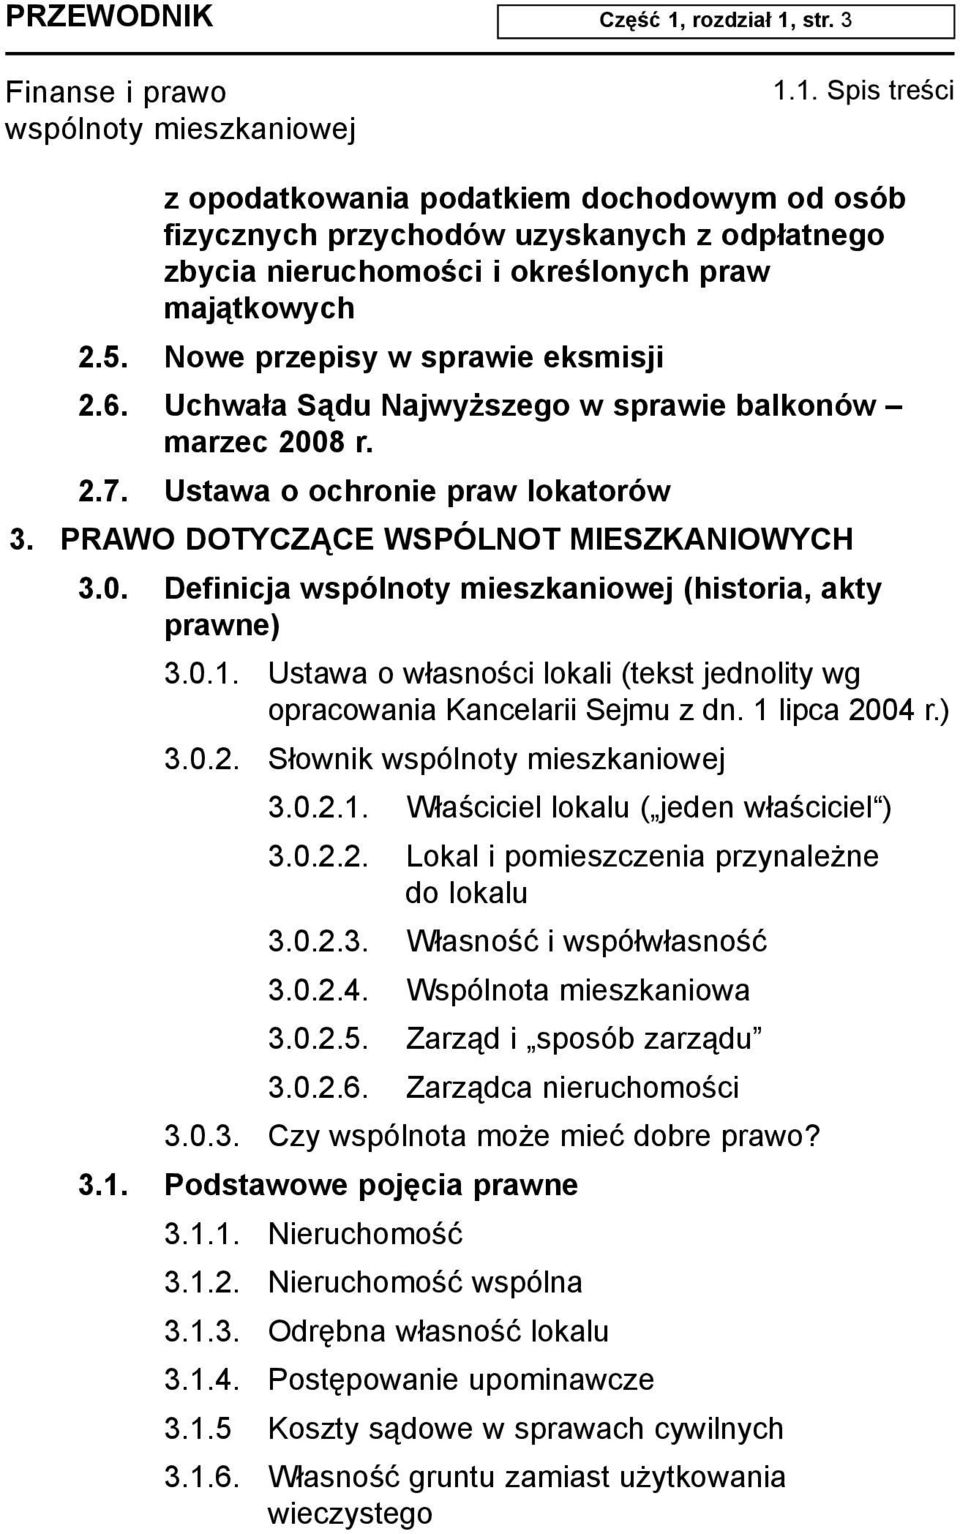 0.1. Ustawa o w³asnoœci lokali (tekst jednolity wg opracowania Kancelarii Sejmu z dn. 1 lipca 2004 r.) 3.0.2. S³ownik 3.0.2.1. W³aœciciel lokalu ( jeden w³aœciciel ) 3.0.2.2. Lokal i pomieszczenia przynale ne do lokalu 3.